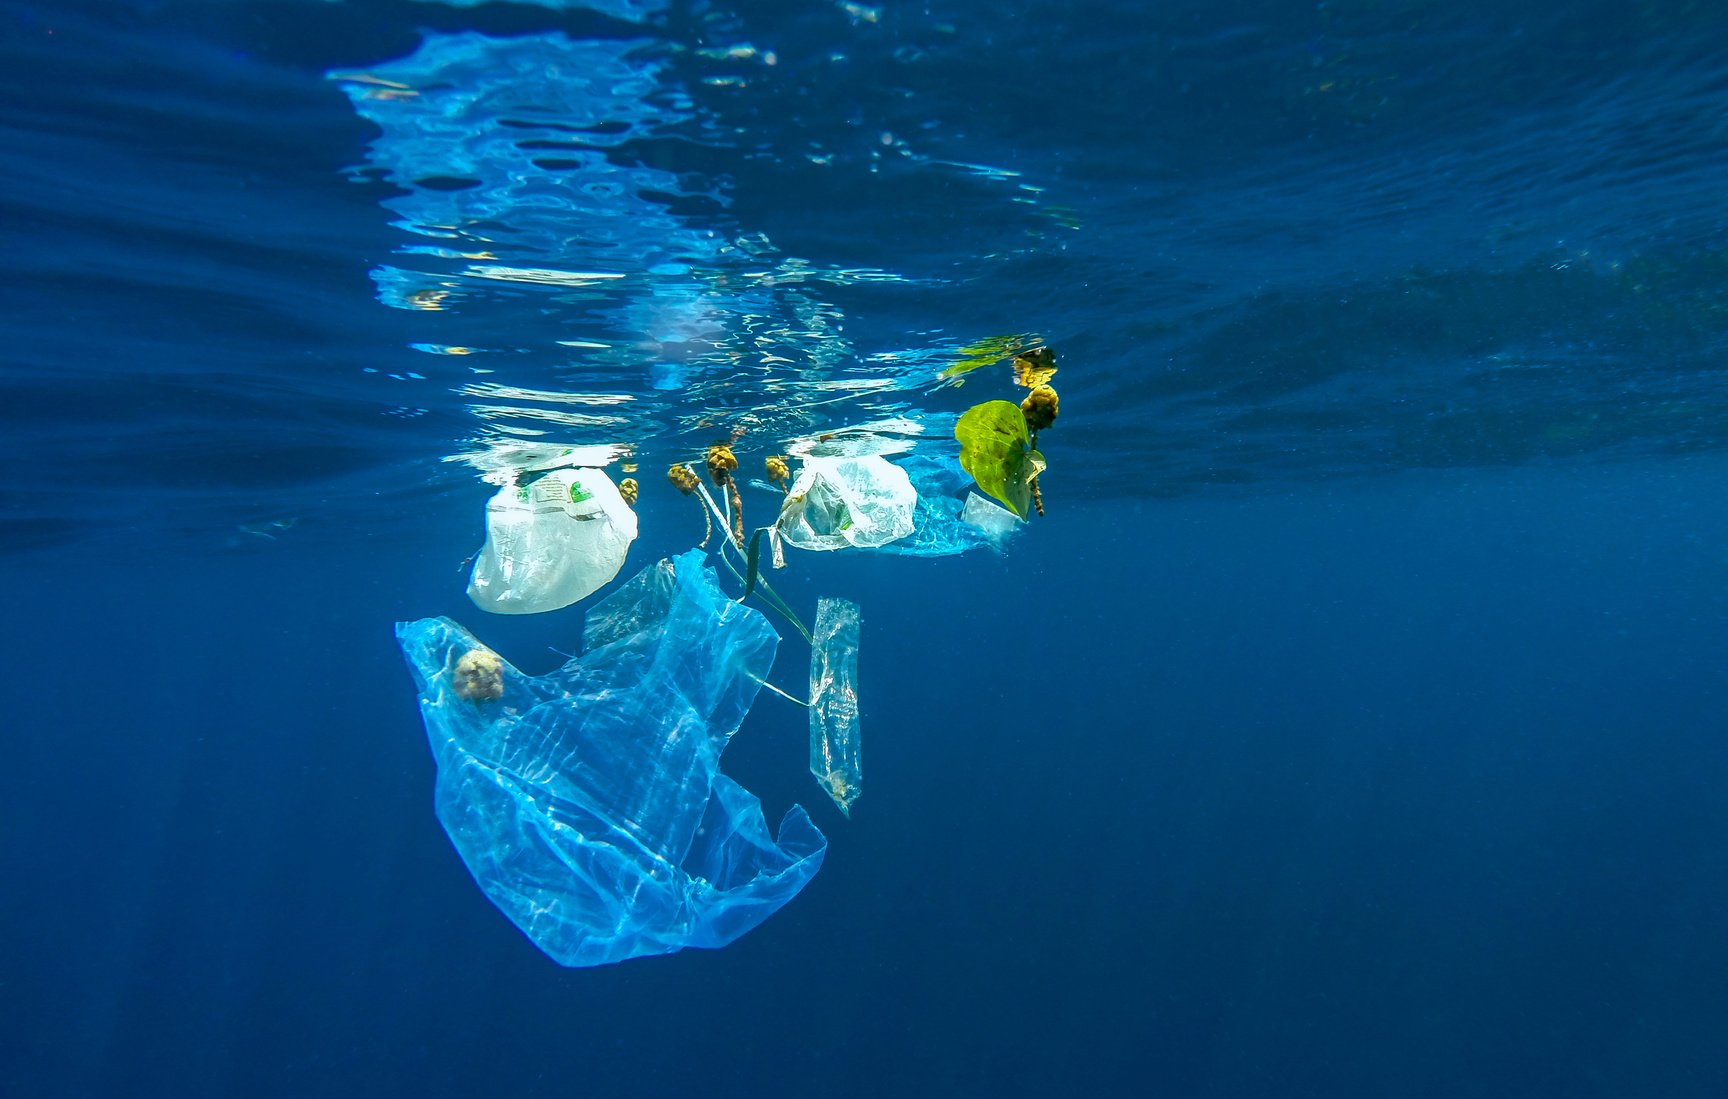 ΙΕΛΚΑ: Δραστική μείωση της χρήσης λεπτής πλαστικής σακούλας μεταφοράς στα σούπερ μάρκετ το 2019